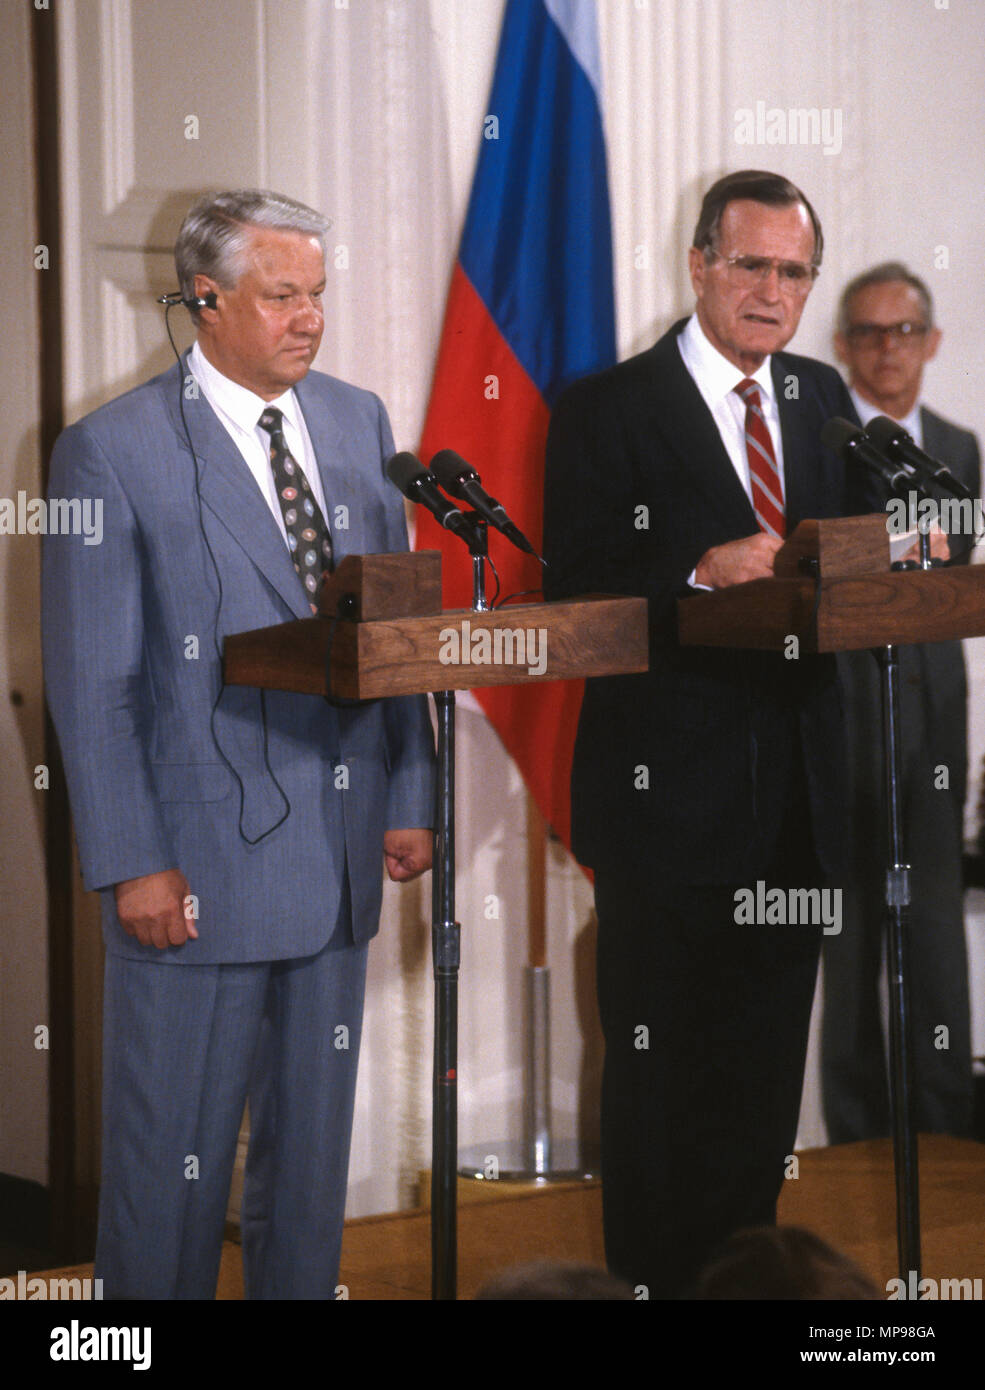 WASHINGTON, DC, Estados Unidos - 17 de junio de 1992 Rusia: el Presidente Boris Yeltin, izquierda, hablando en conferencia de prensa en el Salón Este de la Casa Blanca, durante la cumbre con el Presidente George H.W. Bush. Foto de stock